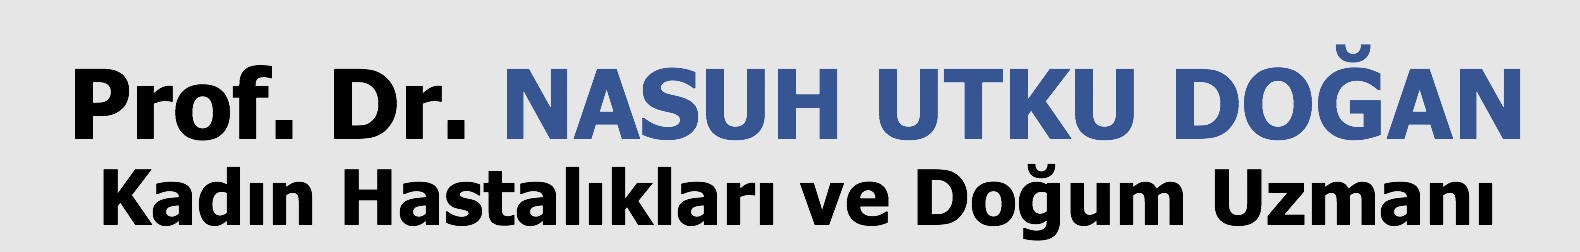 Prof. Dr. Nasuh Utku Doğan